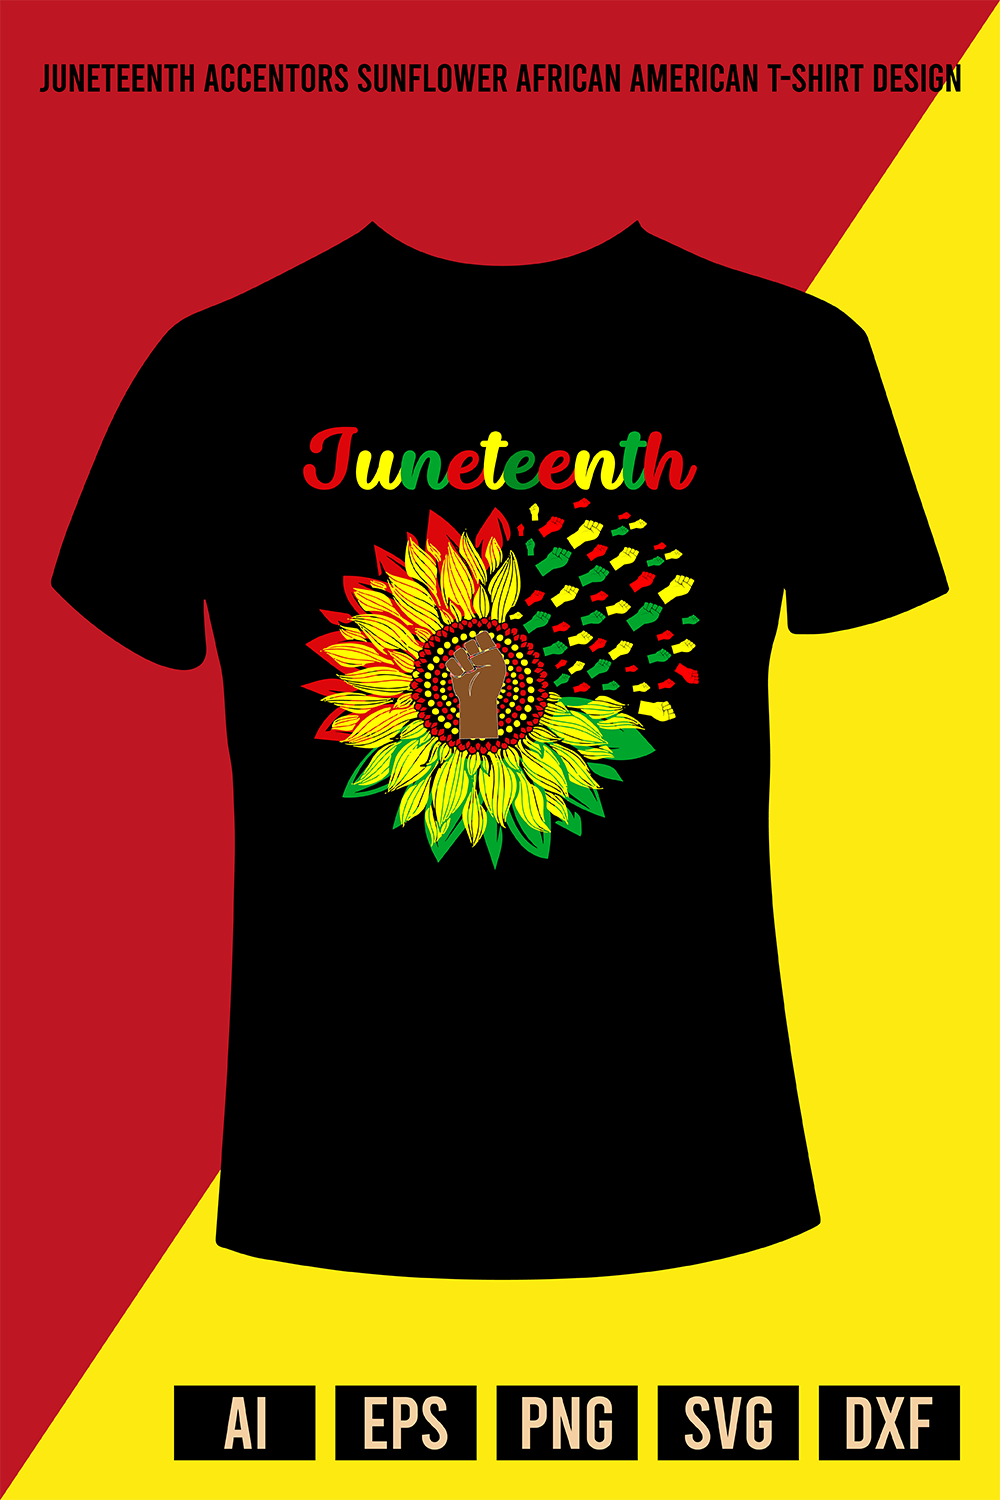 Juneteenth Accentors Sunflower African American T-Shirt Design pinterest preview image.